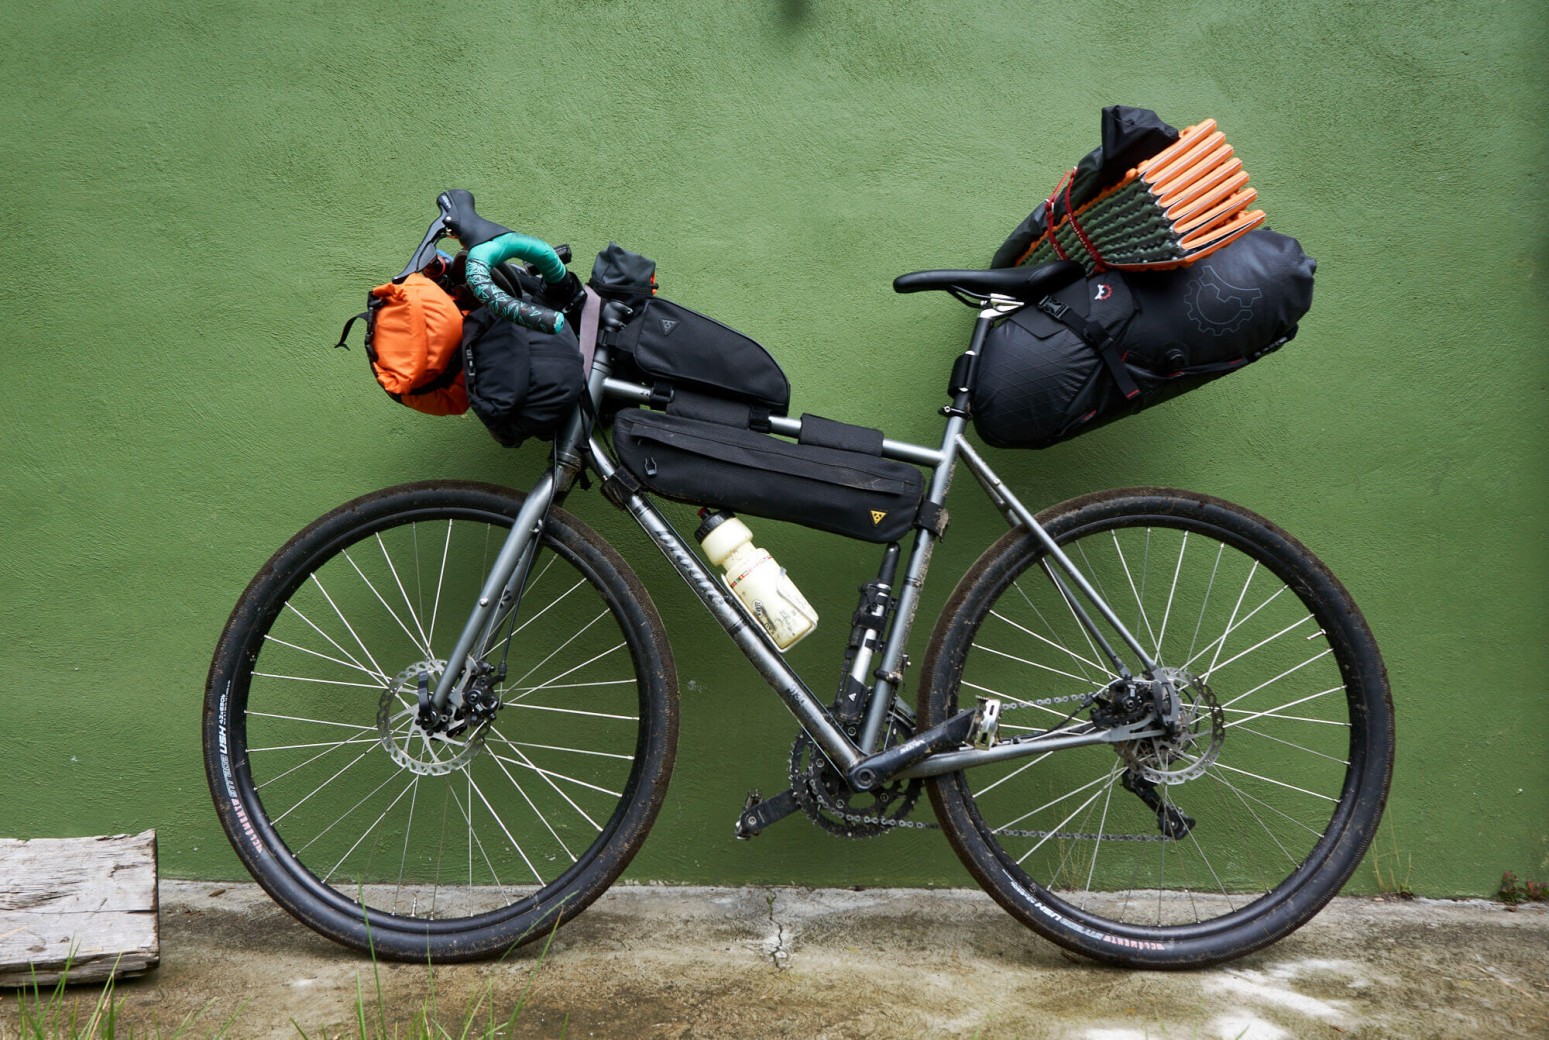 elegir-bolsas-bikepacking/